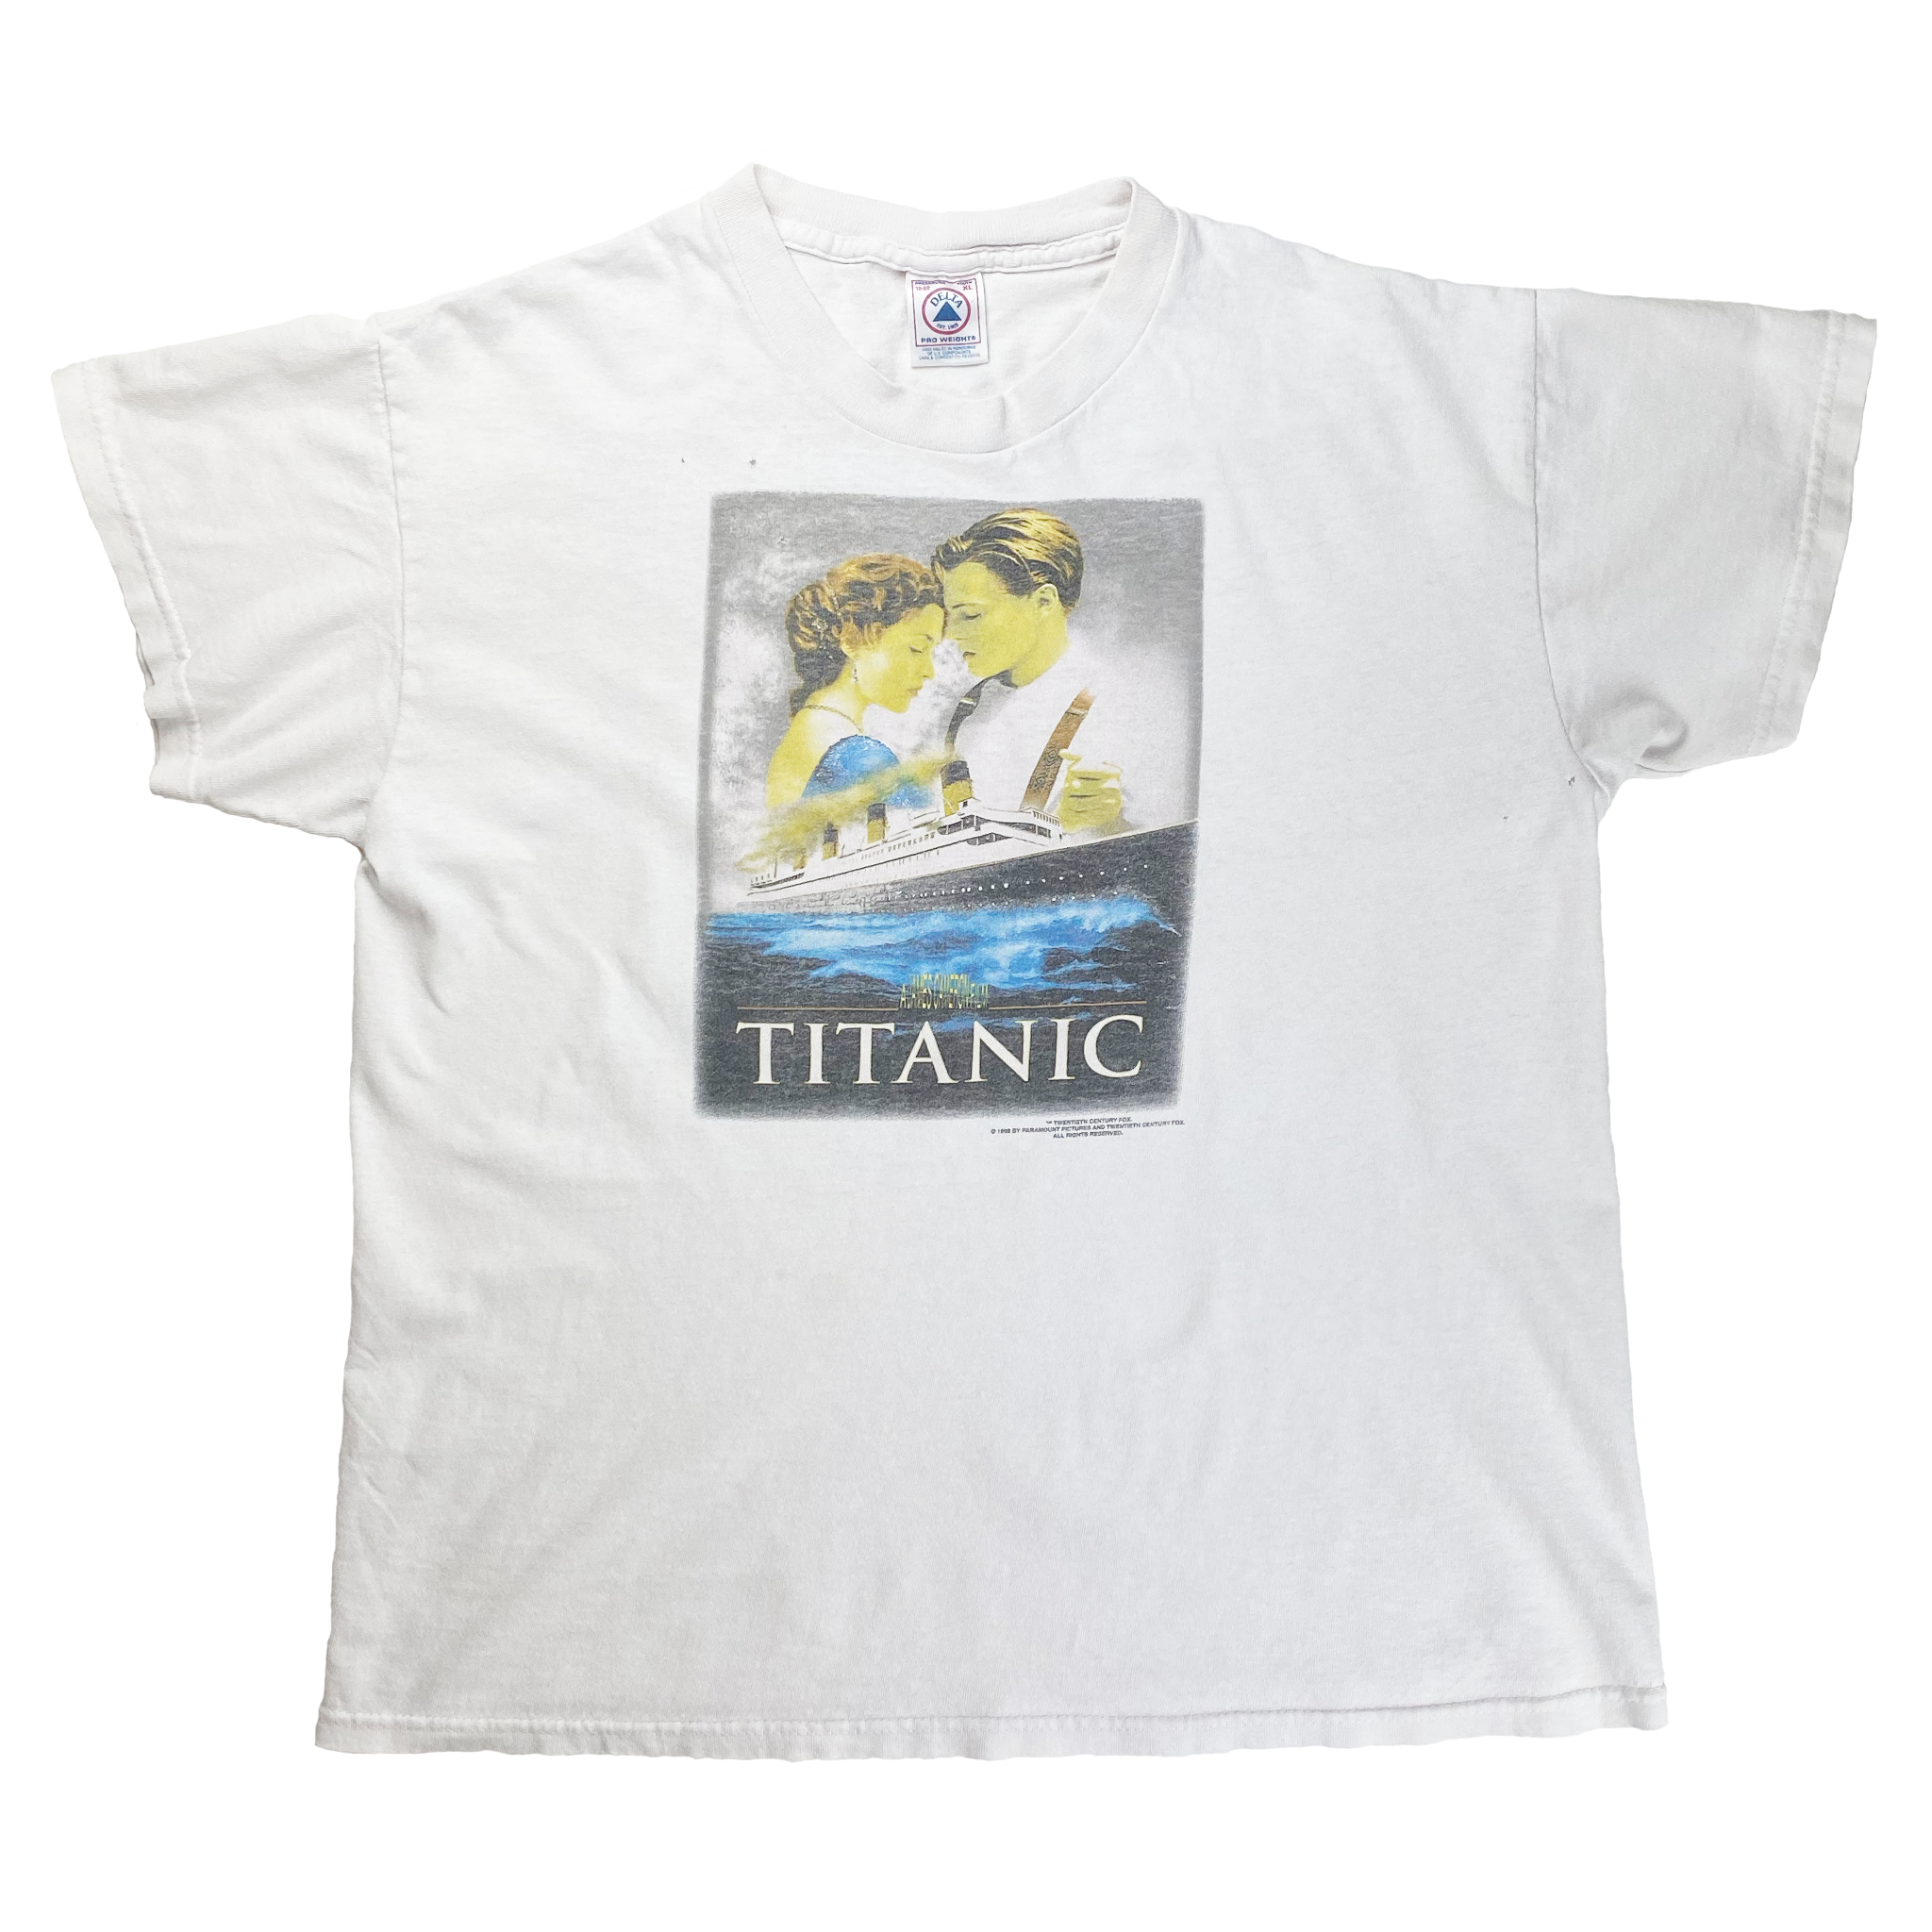 Titanic Promo T-Shirt (M)